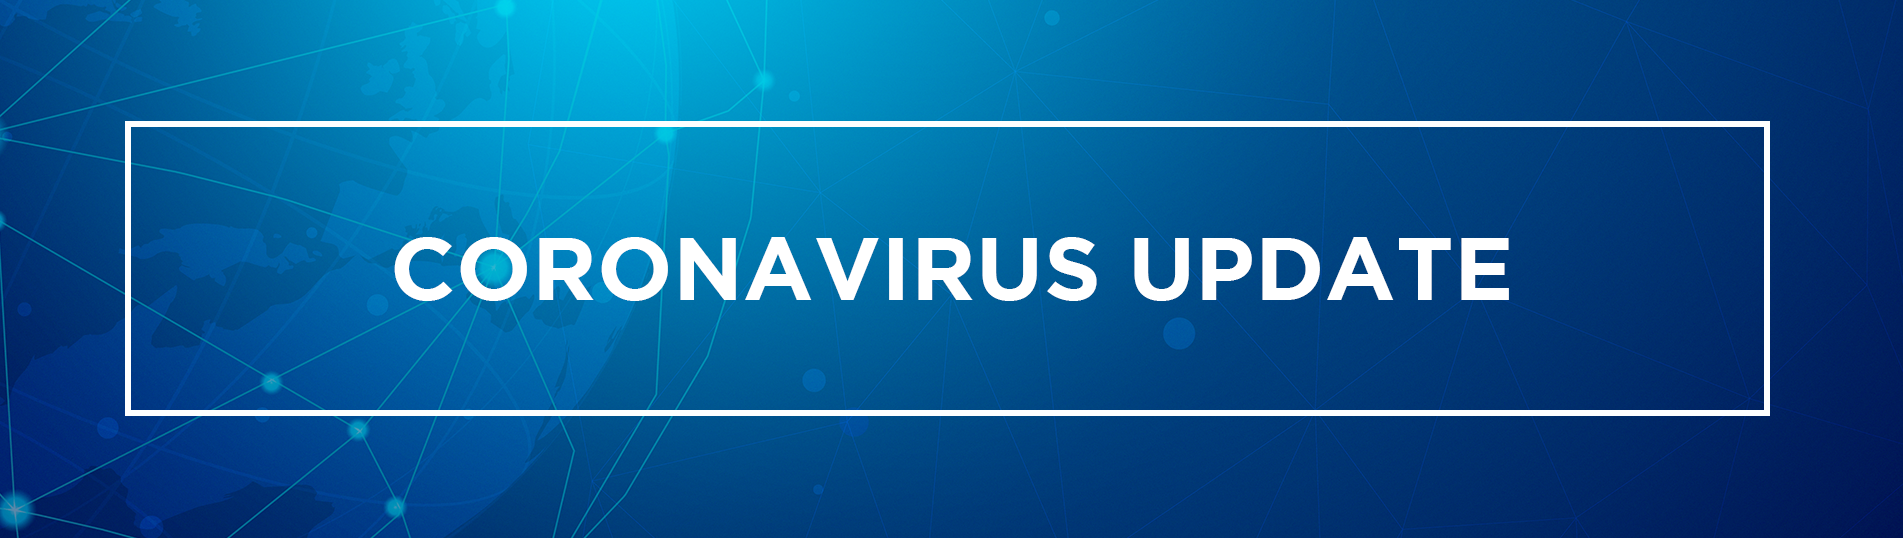 Update coronavirus Latest LIVE: